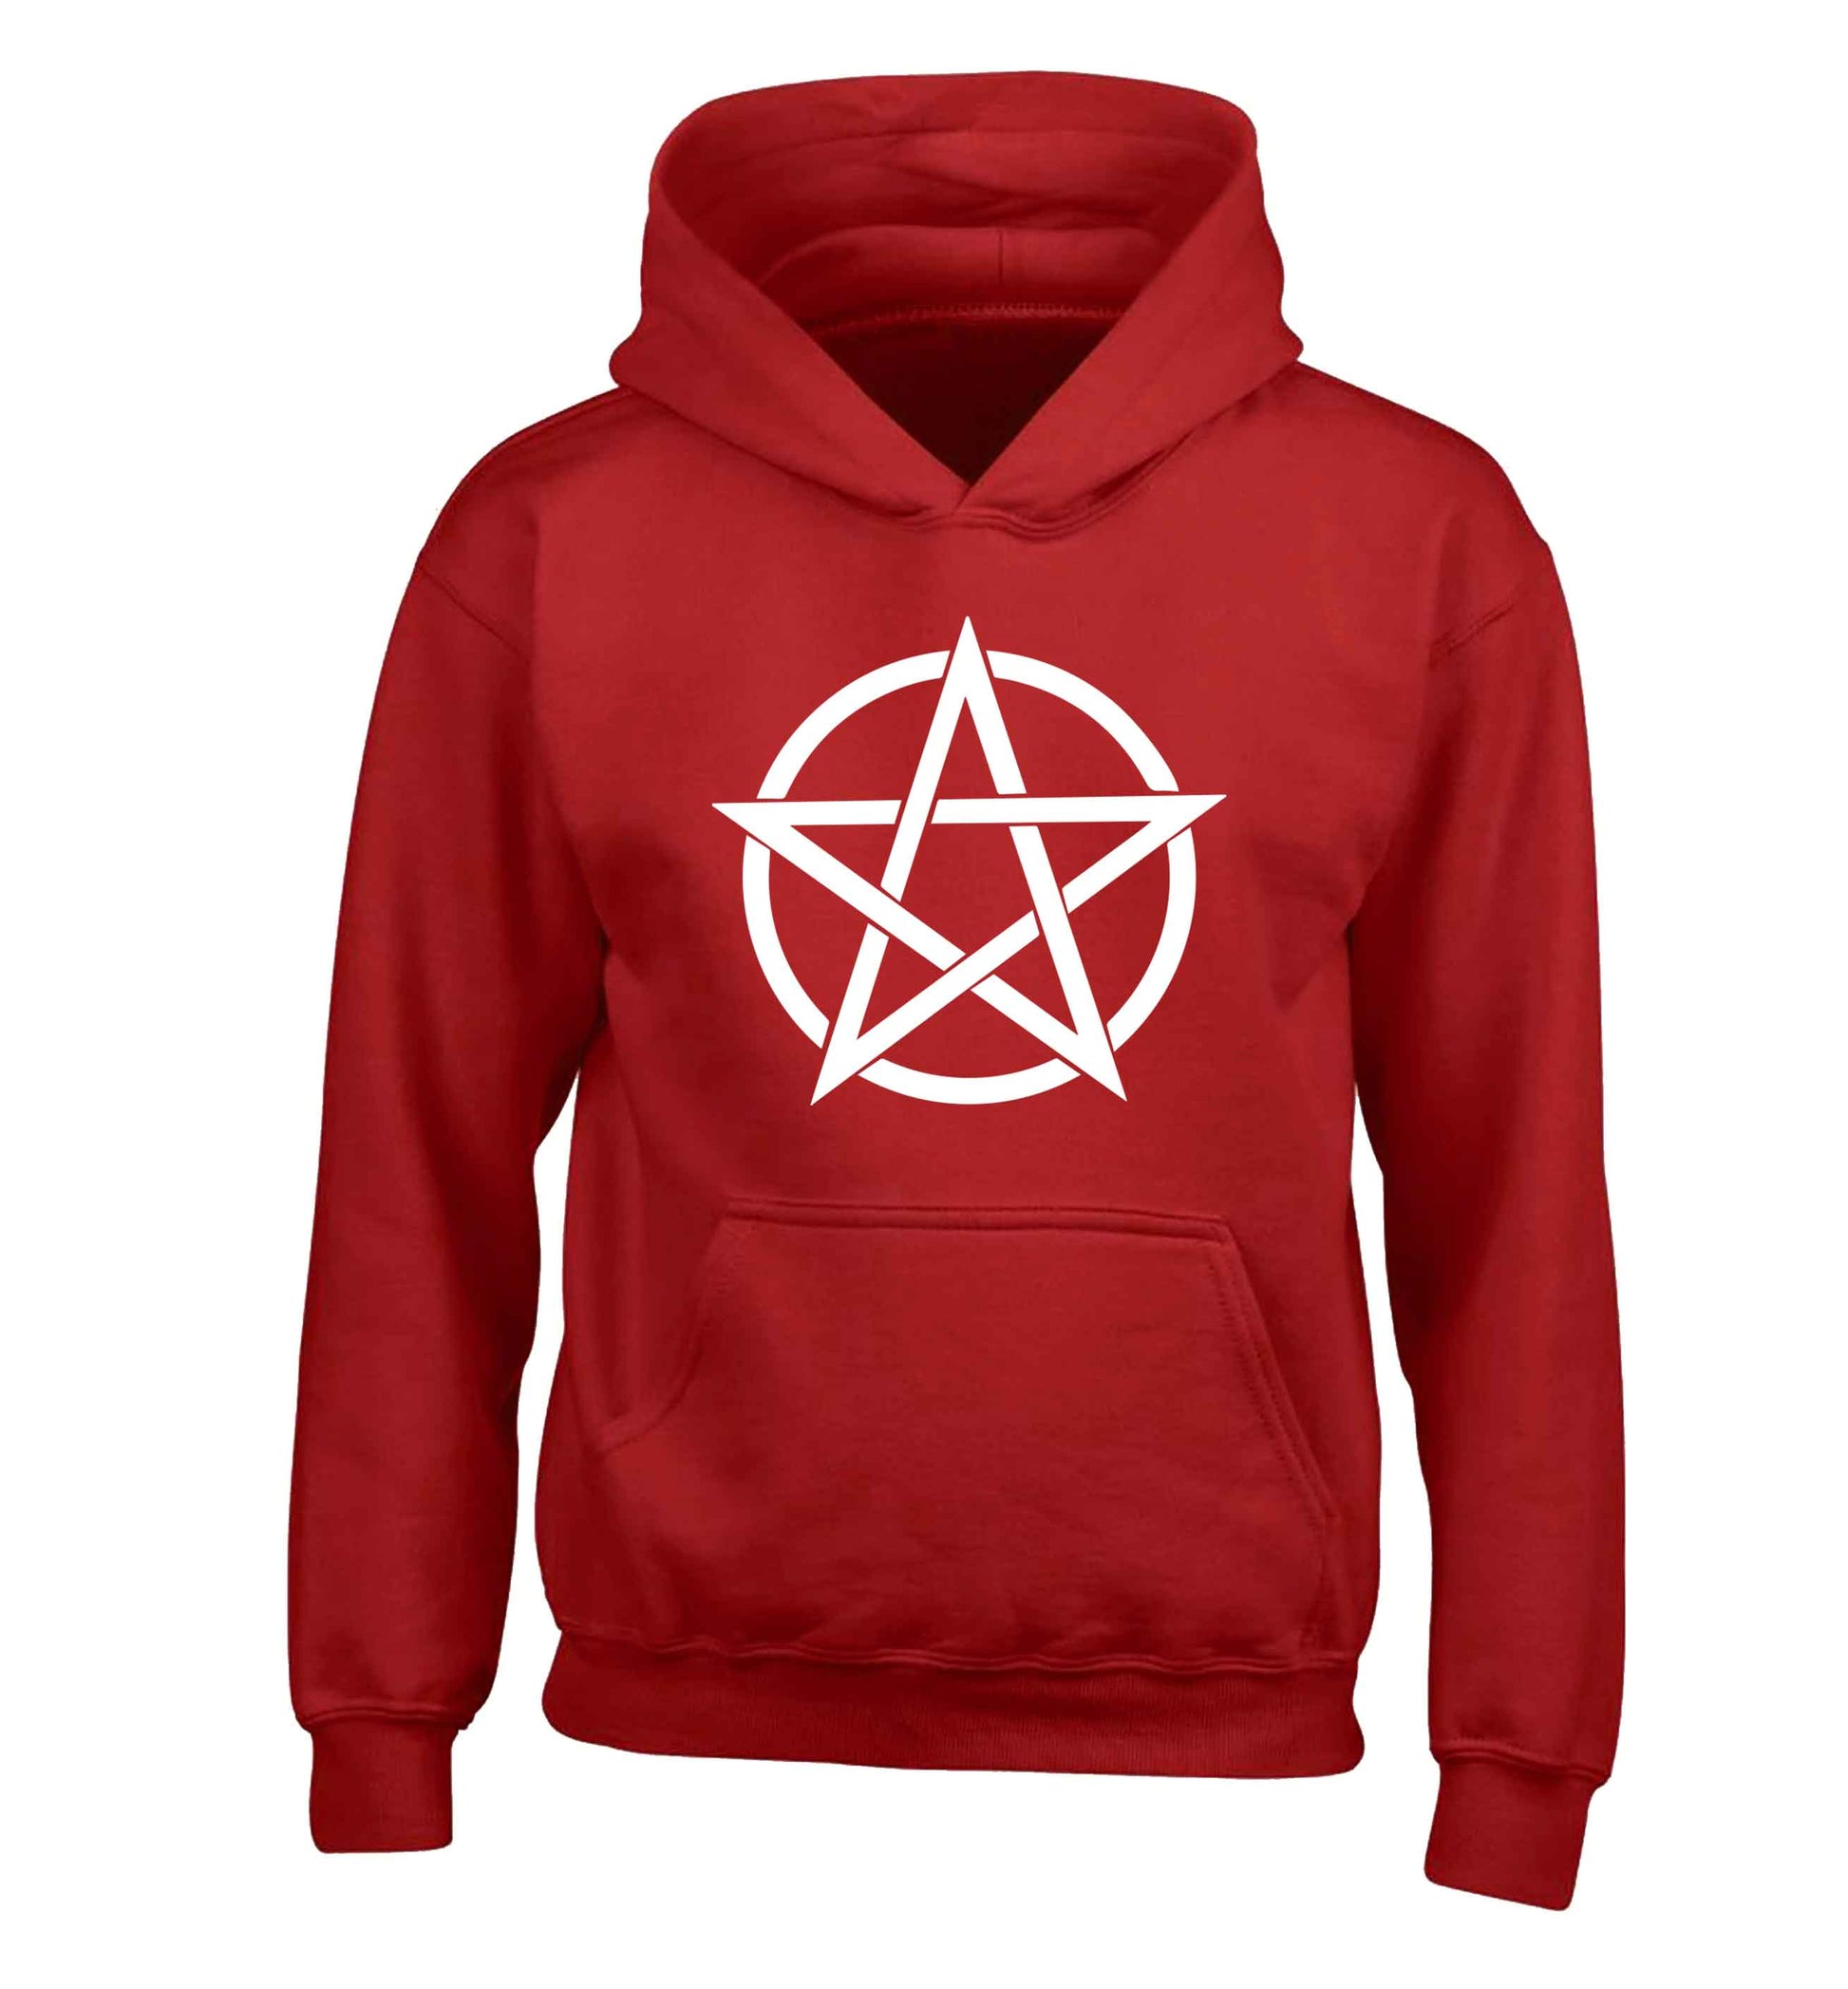 Pentagram symbol children's red hoodie 12-13 Years